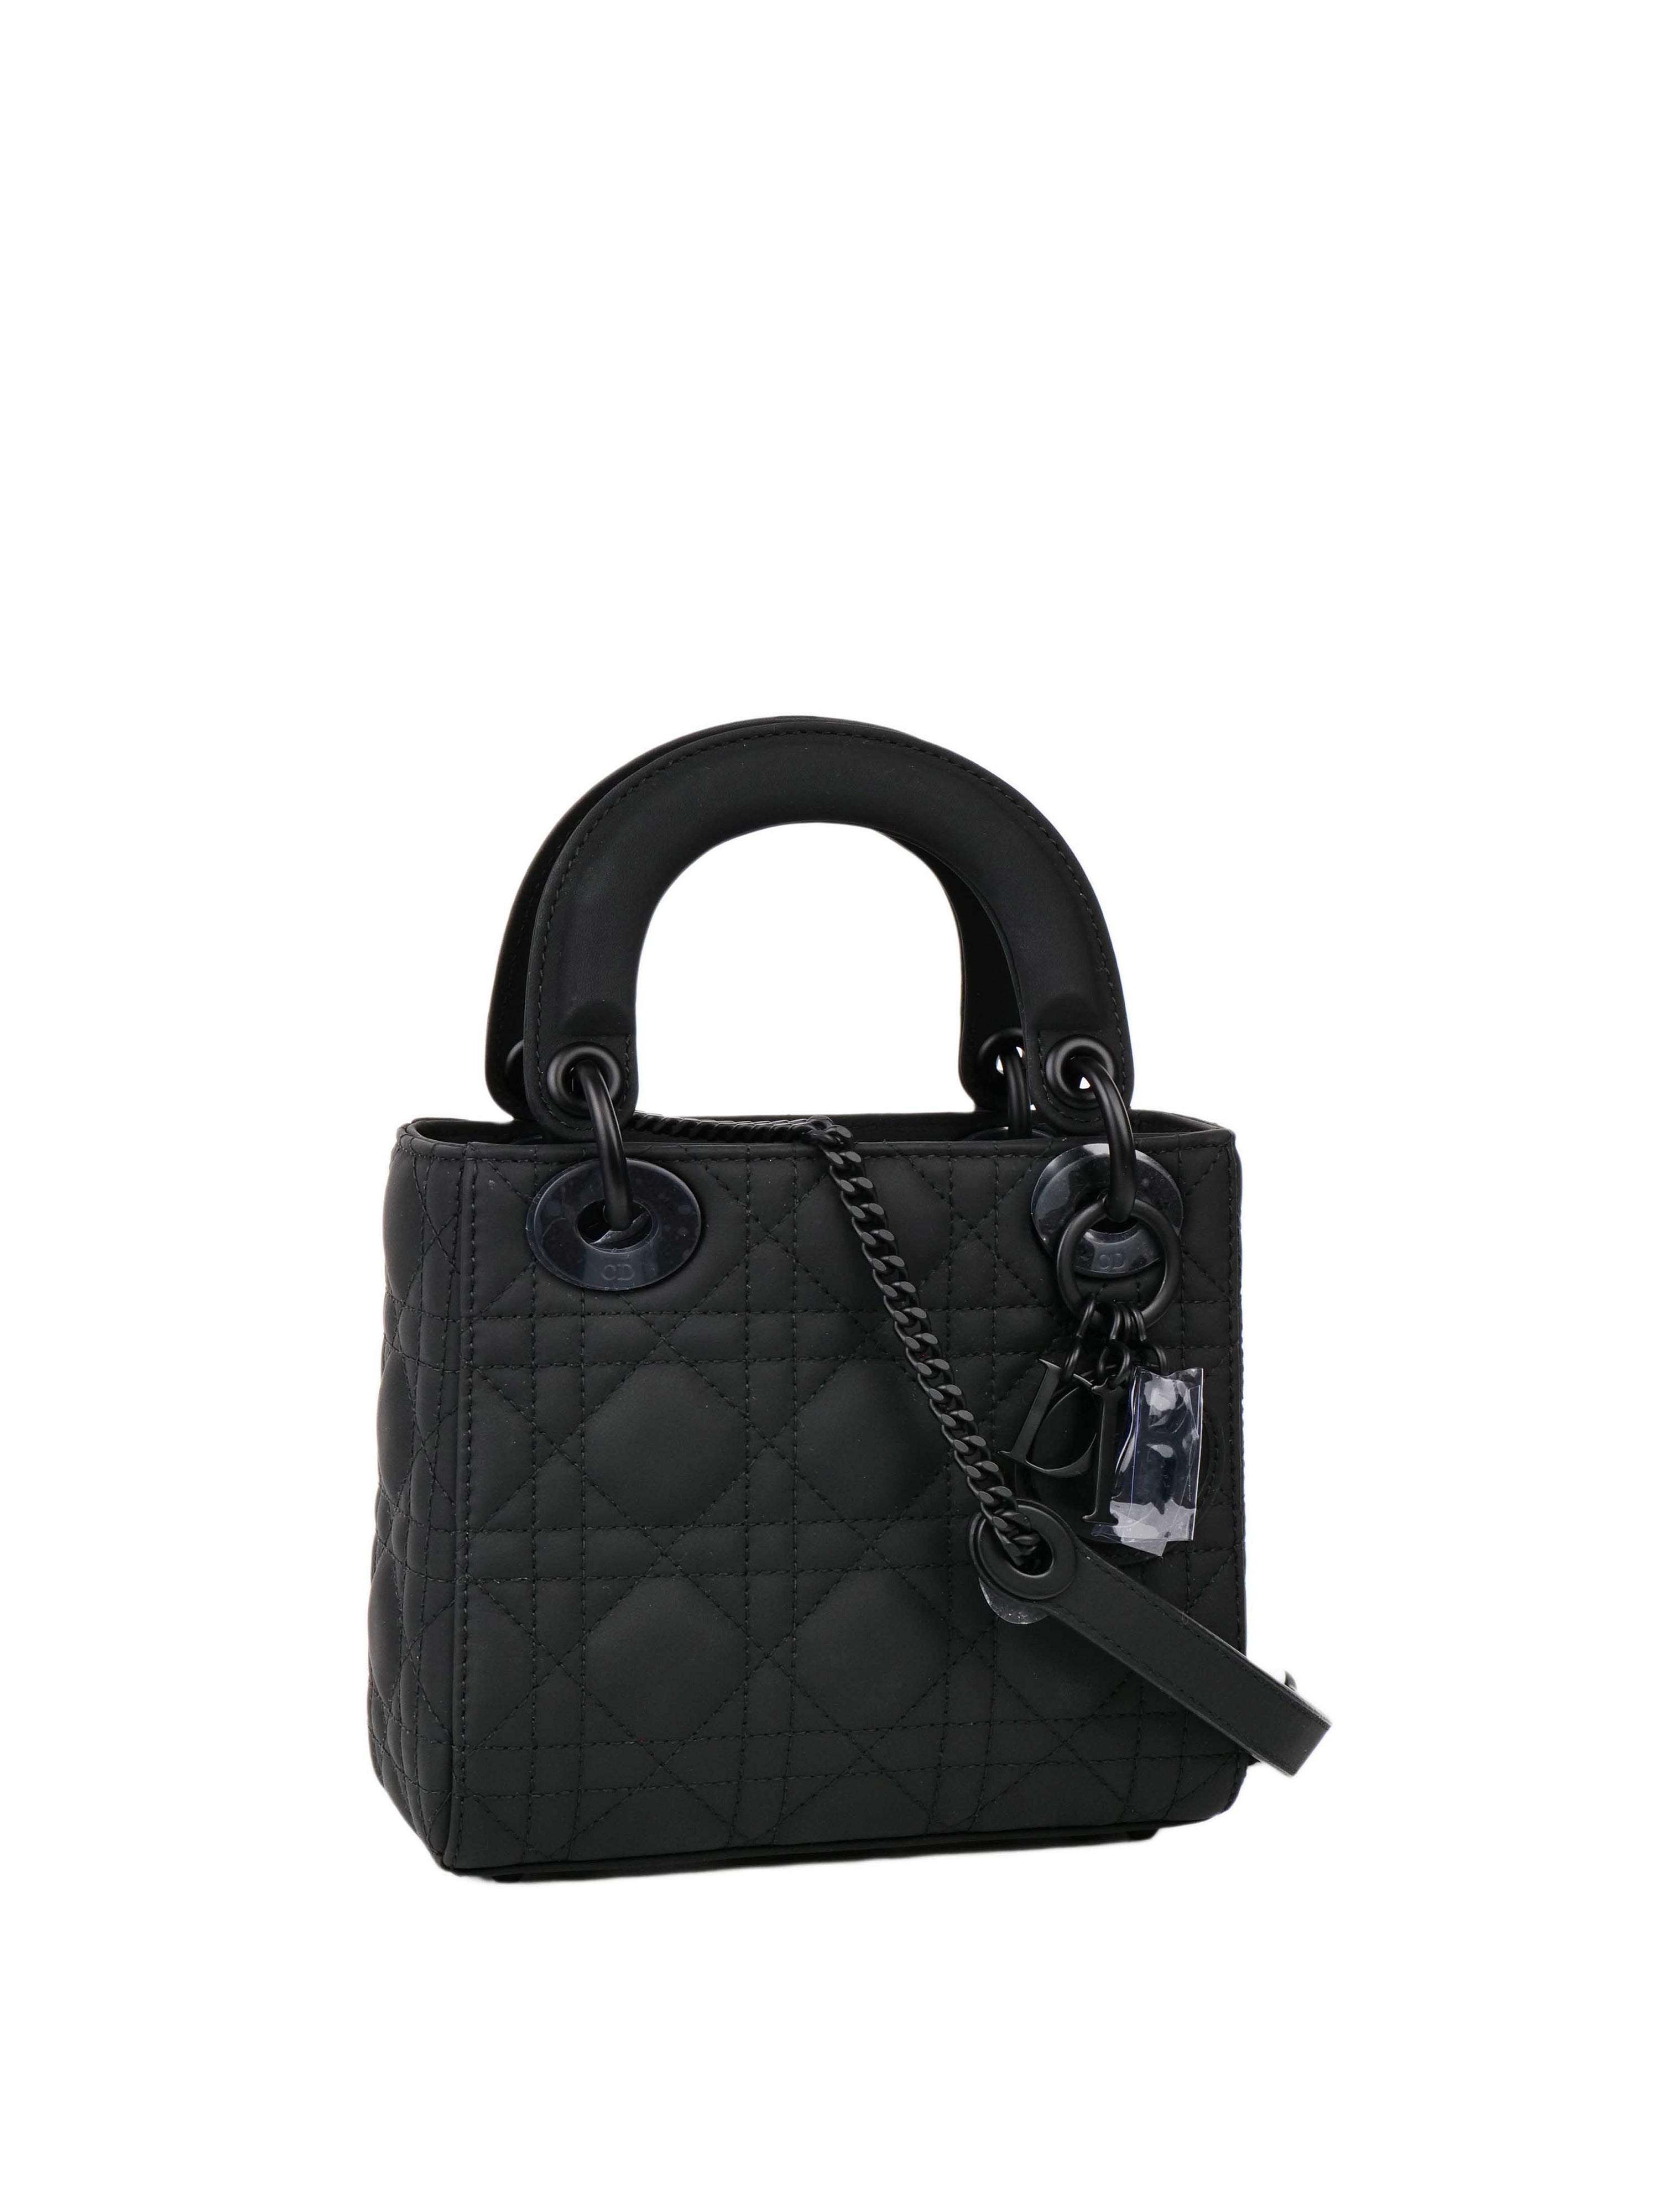 Dior Mini Lady Dior Ultramatte Black Bag.